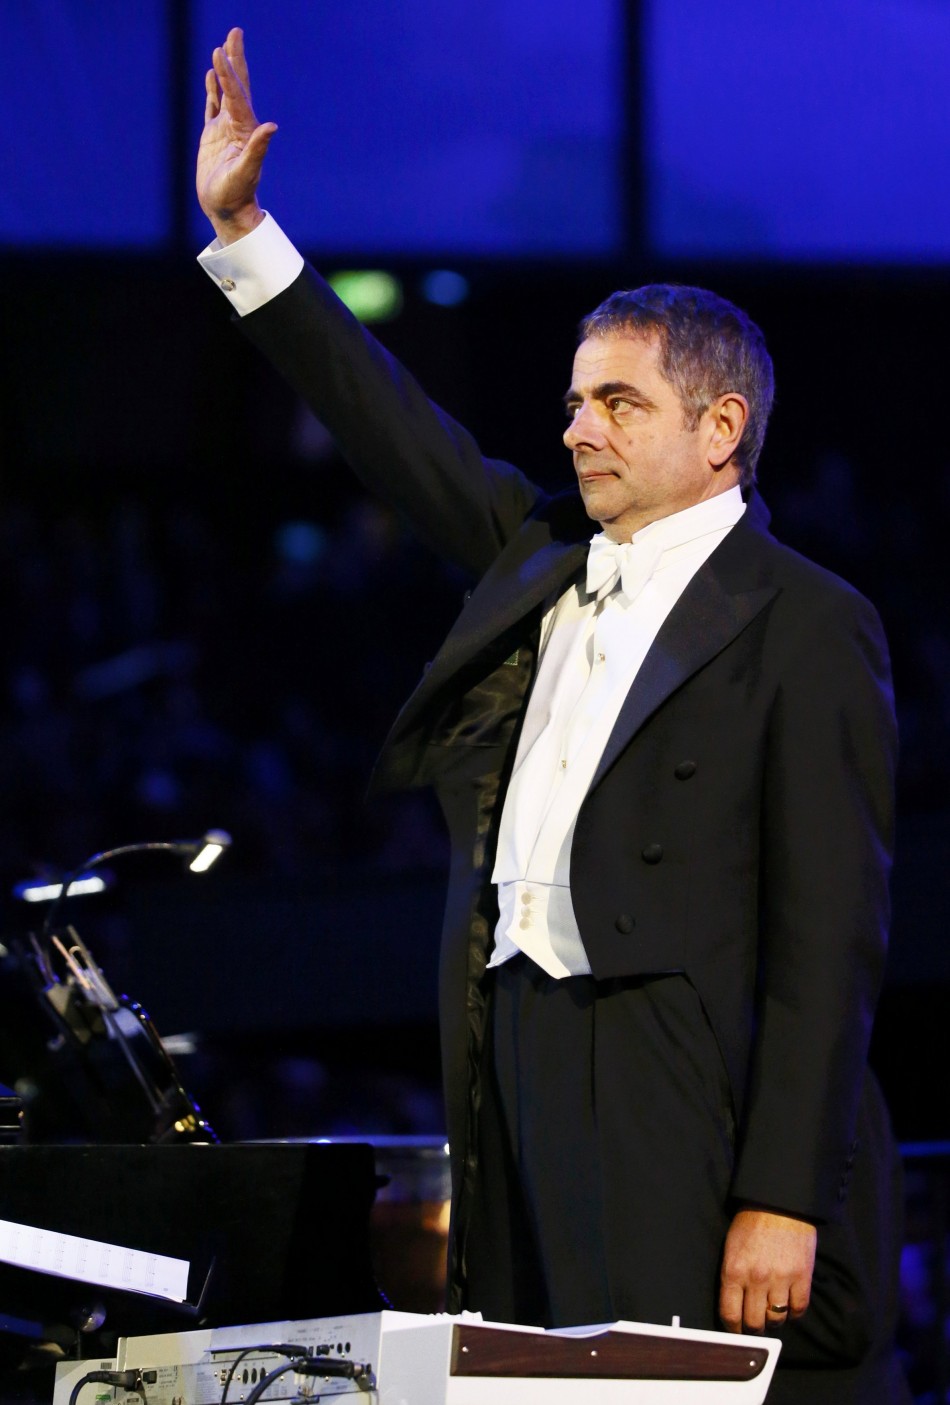 Mr Bean at 2012 London Olympics